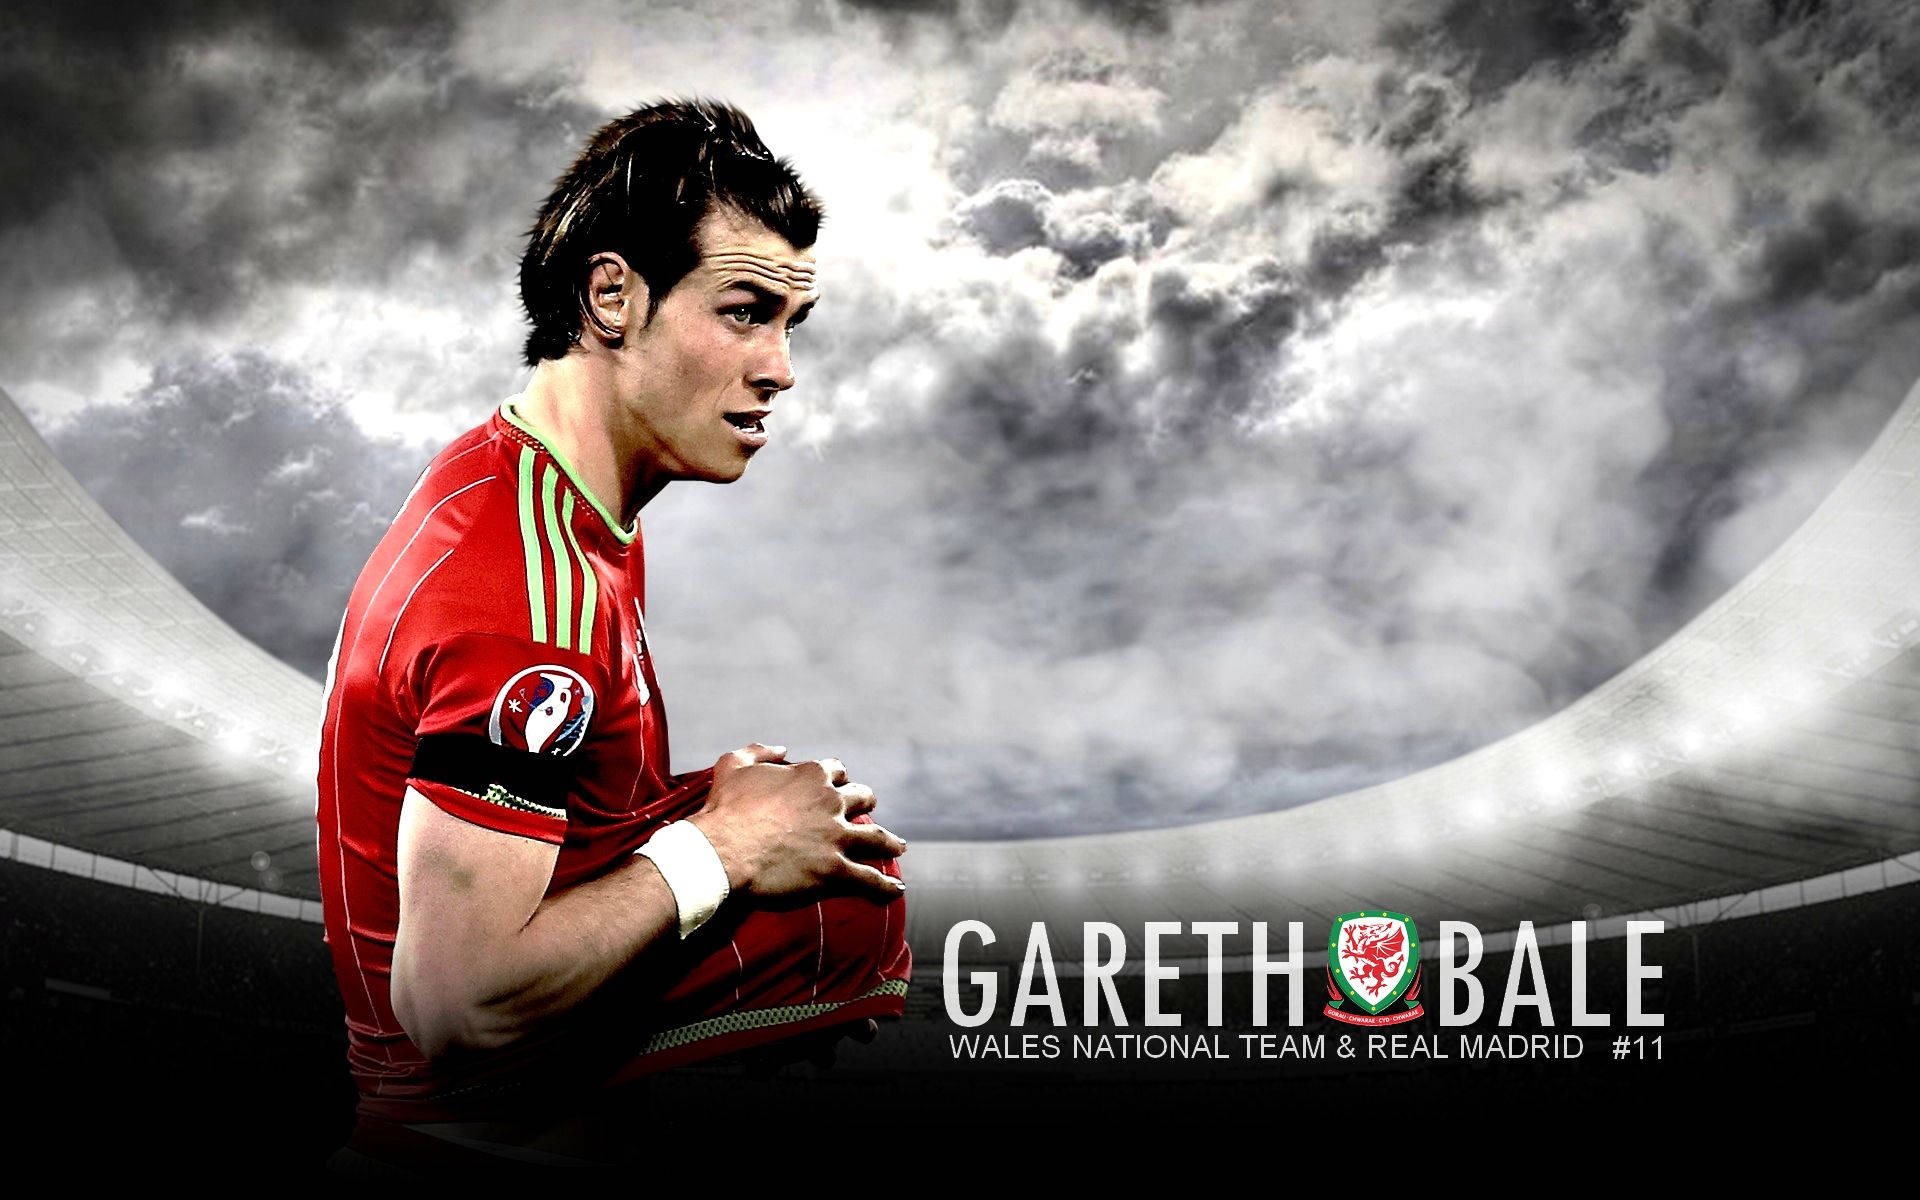 Seleçãonacional Do País De Gales, Arte De Fã Do Gareth Bale, Como Papel De Parede No Computador Ou Celular. Papel de Parede